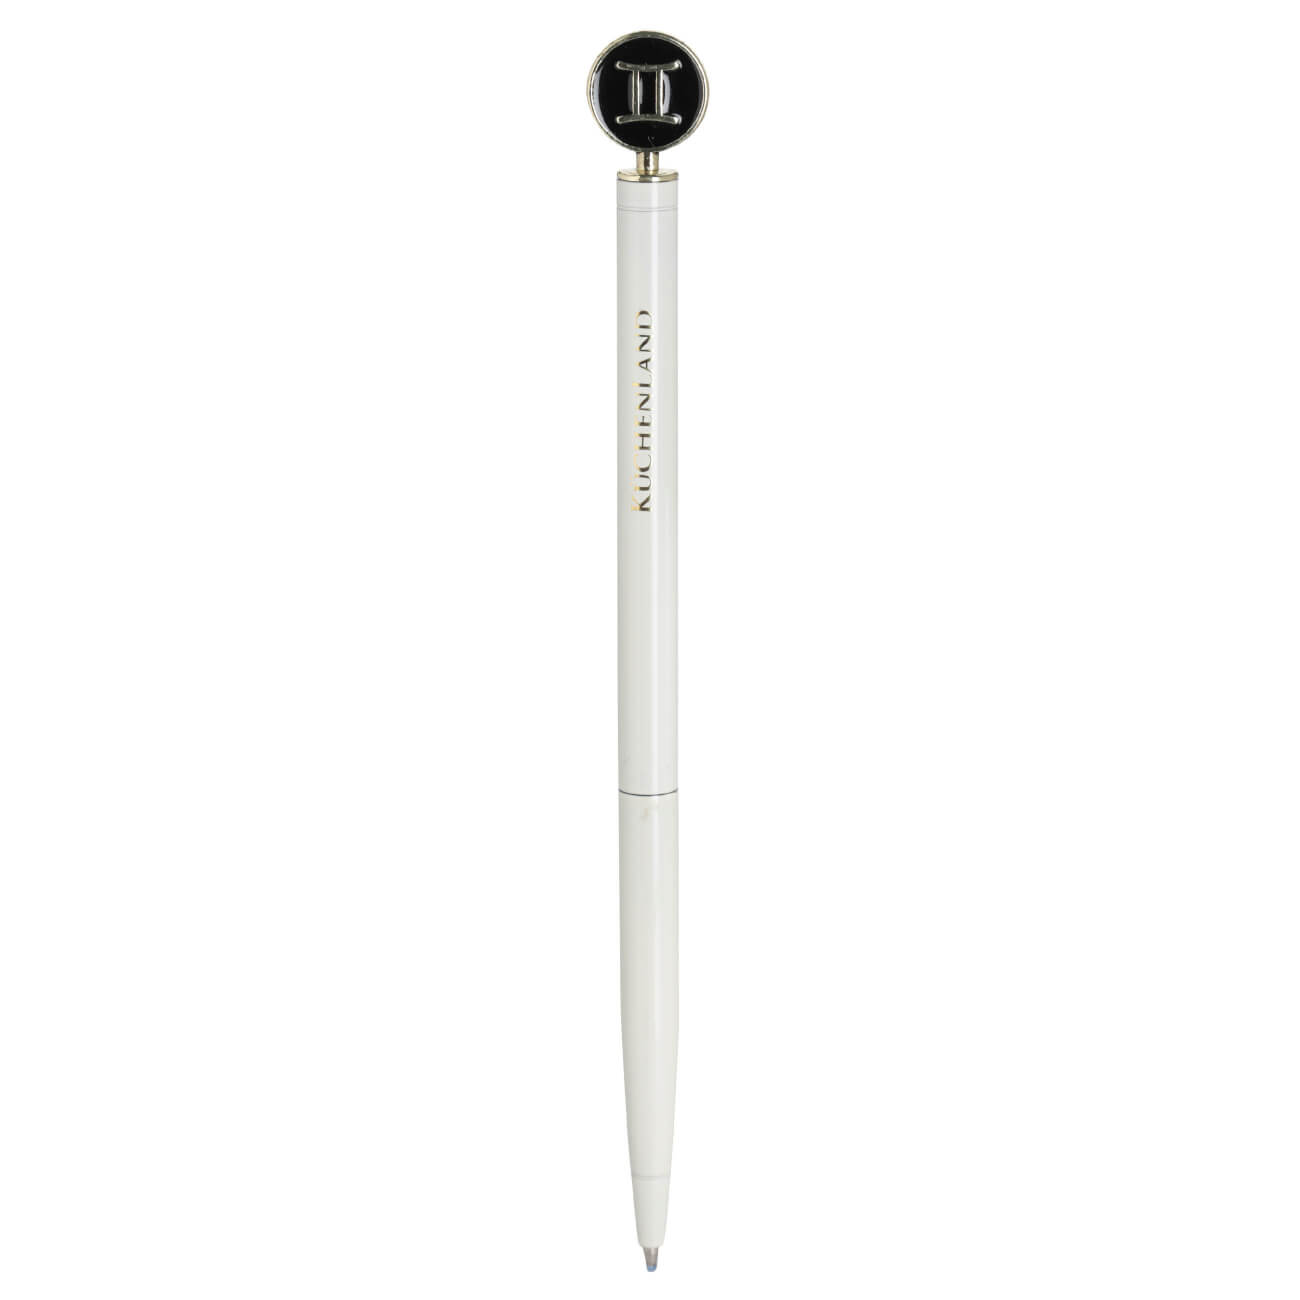 Ручка шариковая, 15 см, с фигуркой, сталь, молочно-золотистая, Близнецы, Zodiac подарочная шариковая ручка bikson